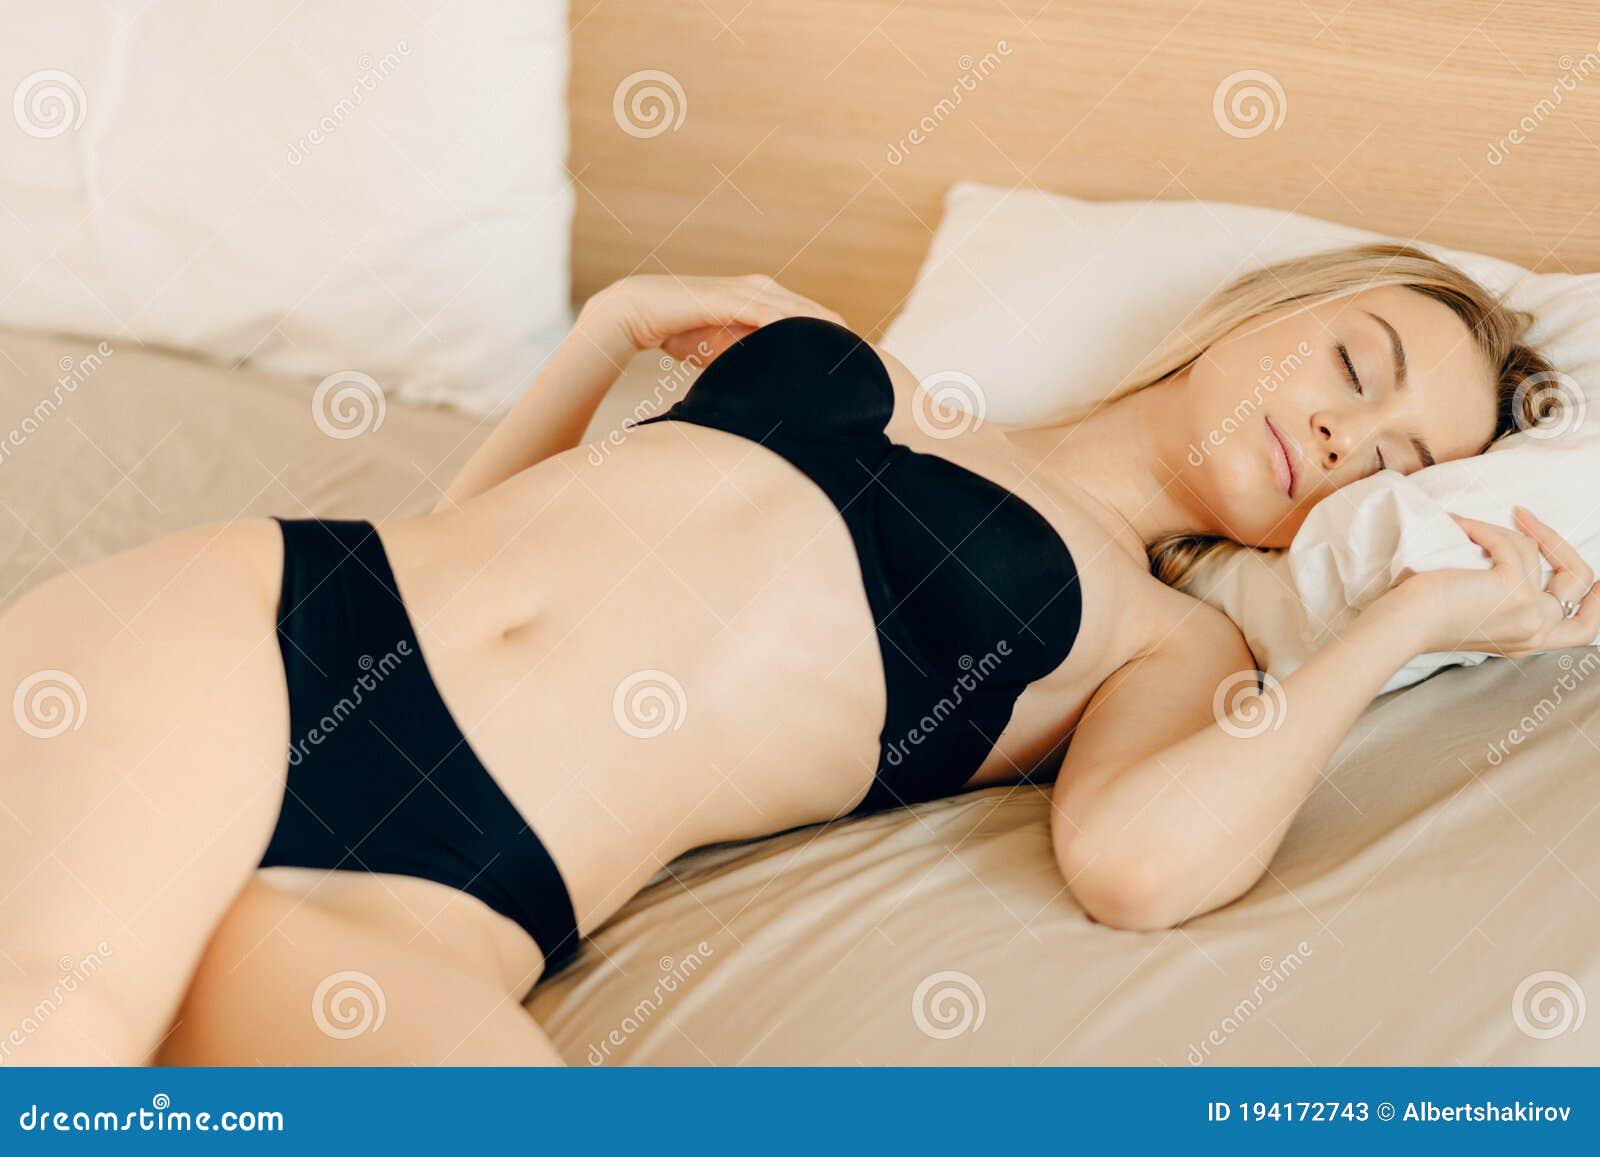 beverley fuller reccomend Girl Sleeping Naked Pics